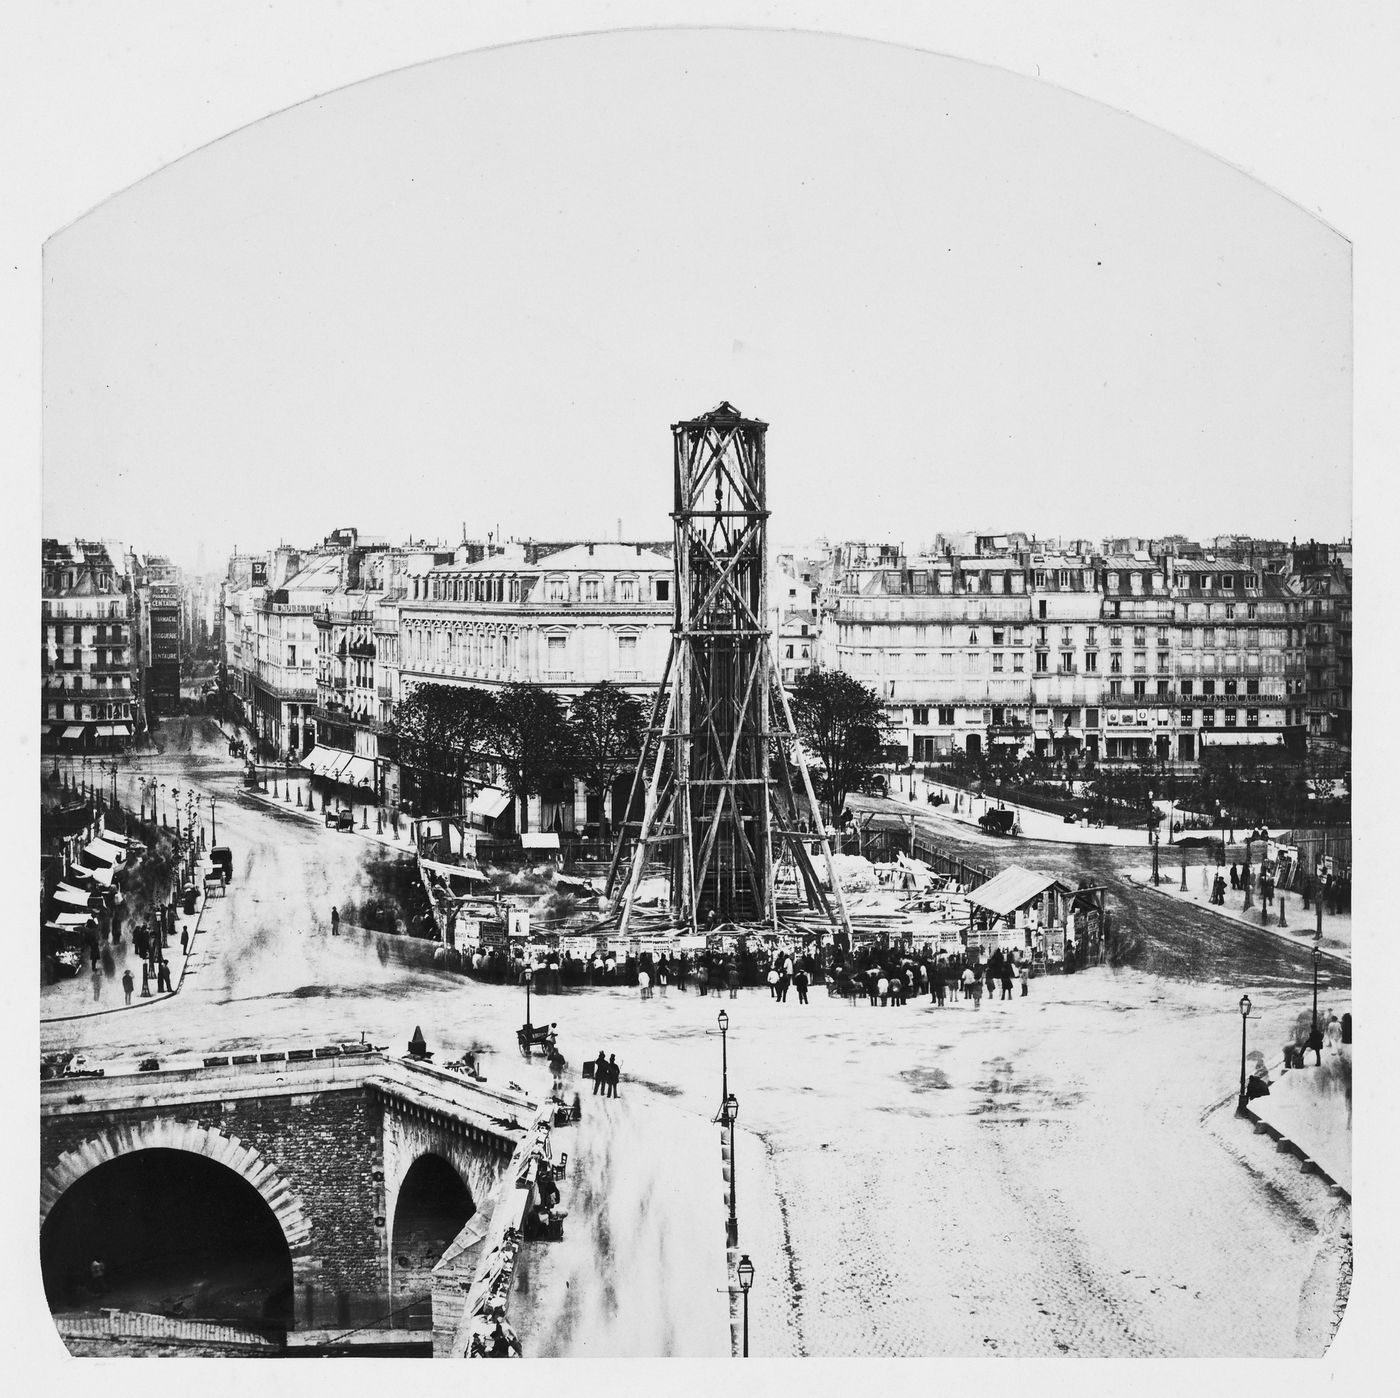 View of Place du Chatelet Fountains under construction [?], Paris, France